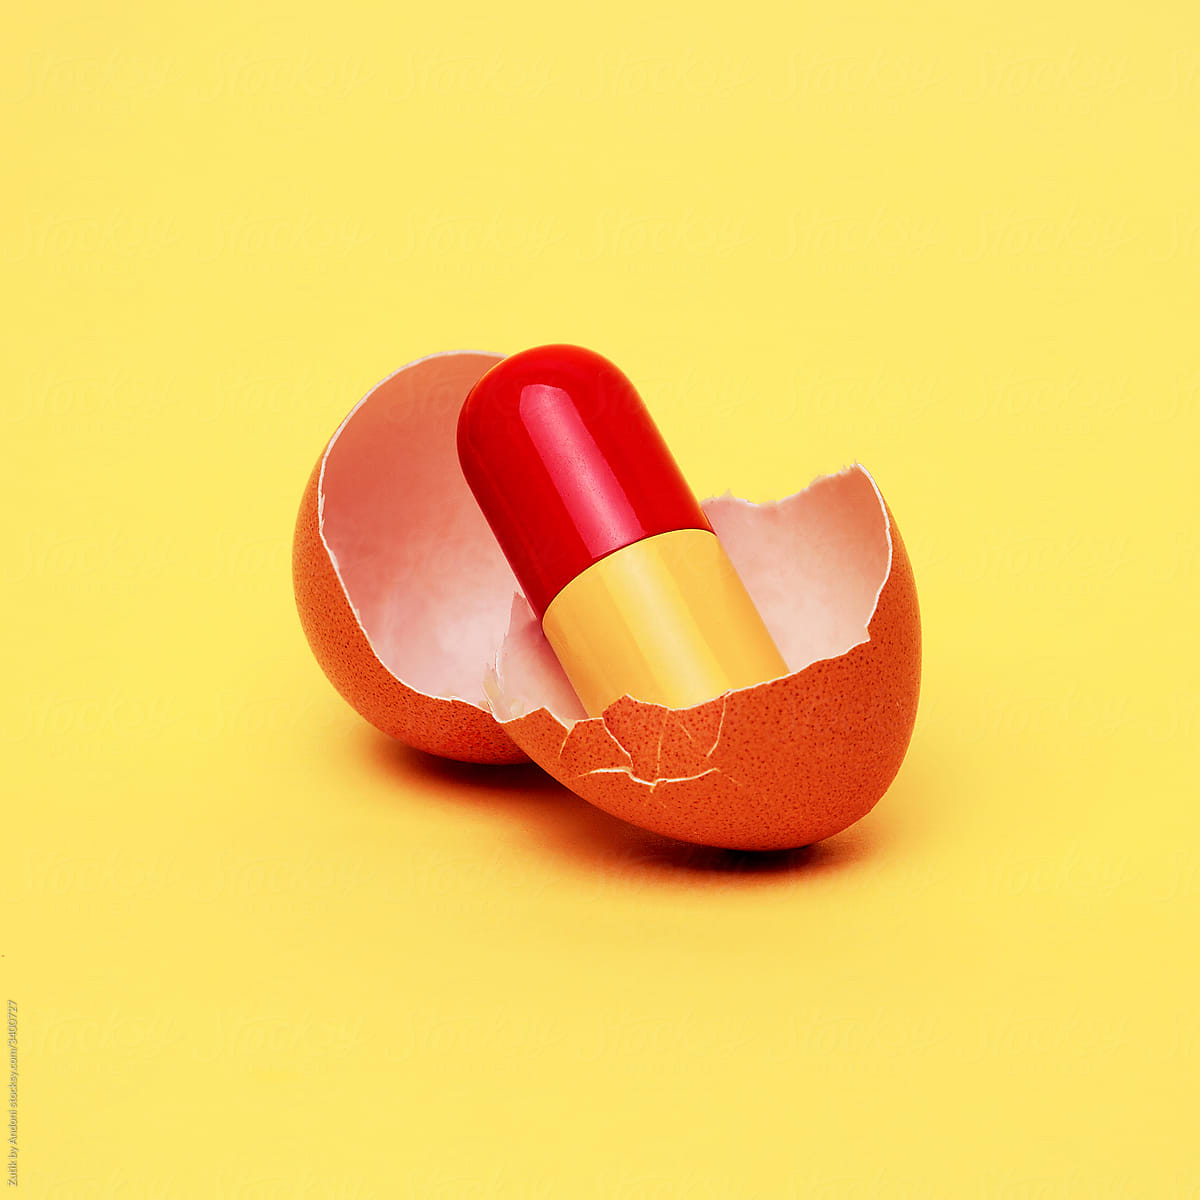 Broken egg with drugs inside